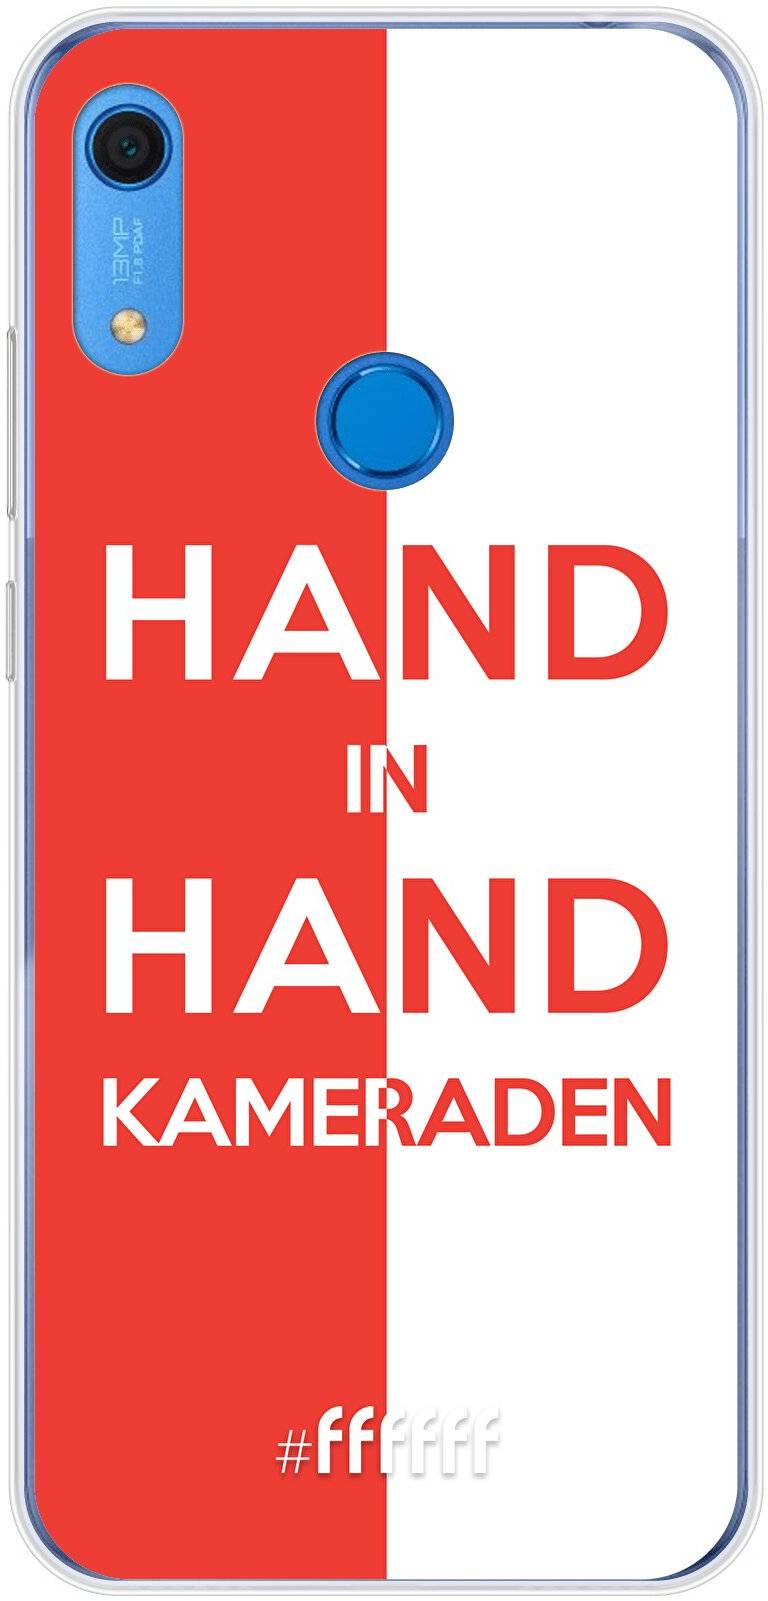 Feyenoord - Hand in hand, kameraden Y6s